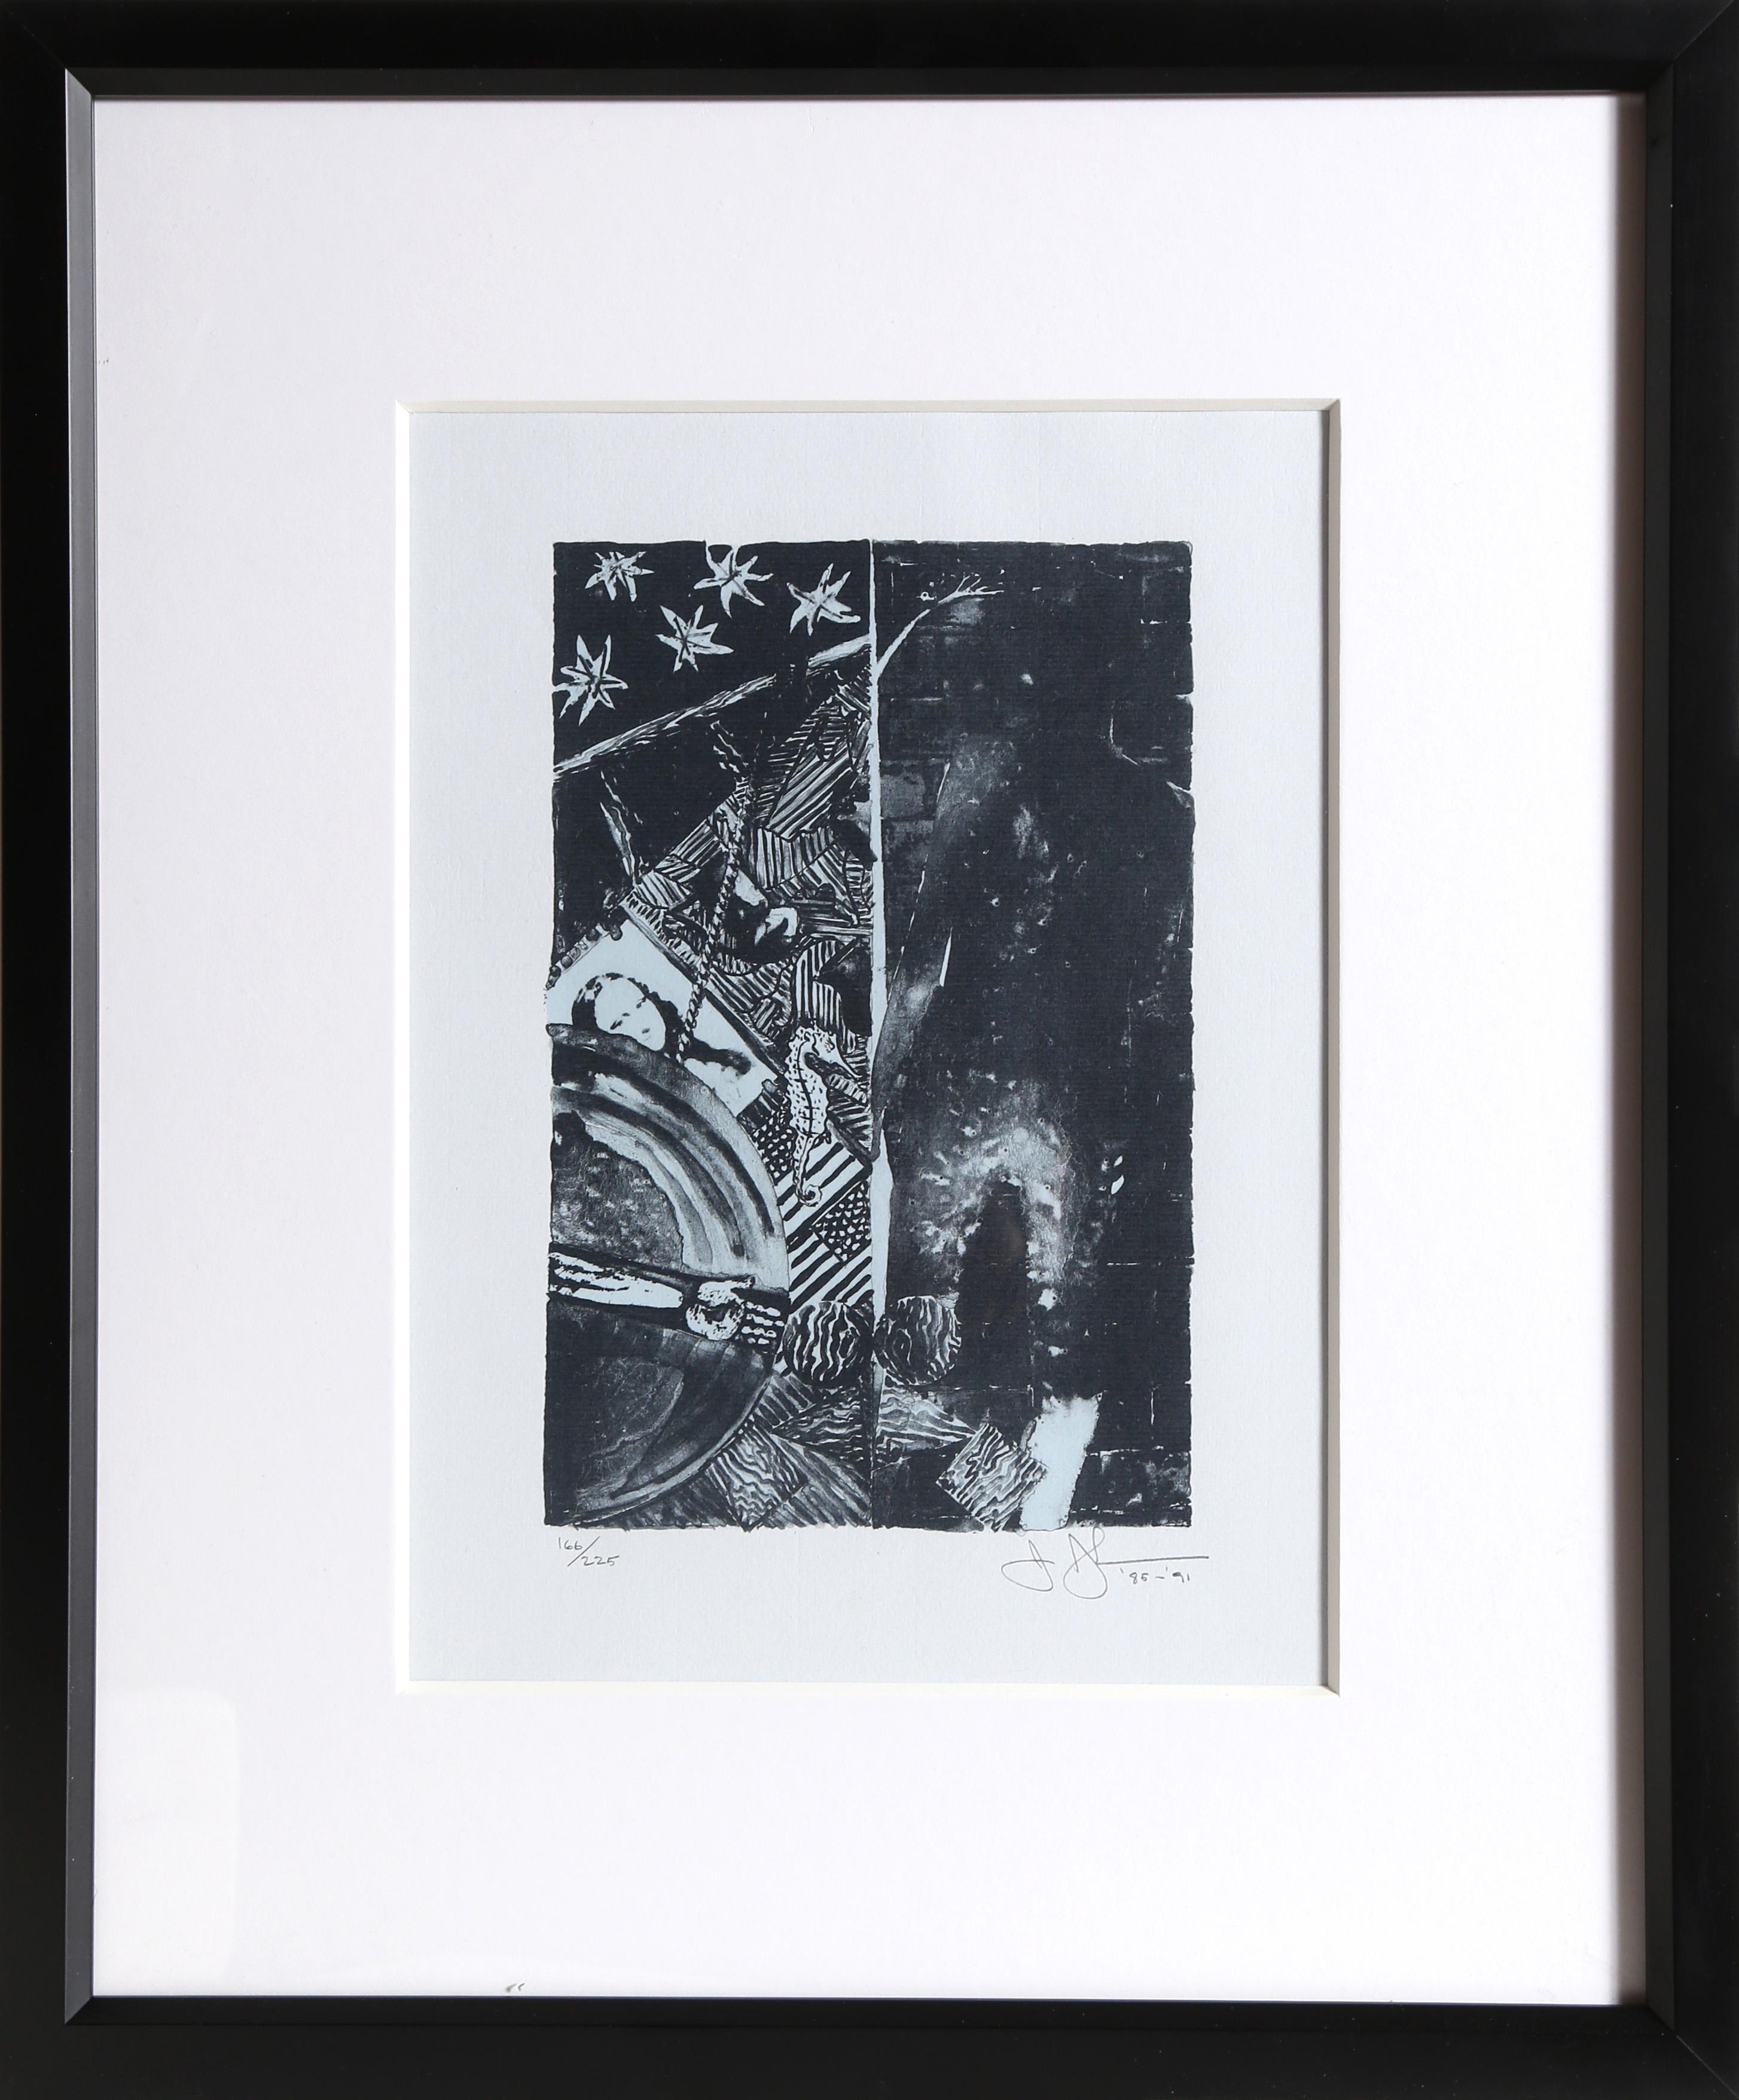 Bleu d'été par Jasper Johns, Américain (1930)
Date : 1985-1991
Lithographie, signée et numérotée au crayon
Edition de 166/225
Taille de l'image : 9.5 x 6.25 pouces
Taille : 16.25 x 11.25 in. (41.28 x 28.58 cm)
Cadre : 20 x 16.5 pouces

Imprimeur :